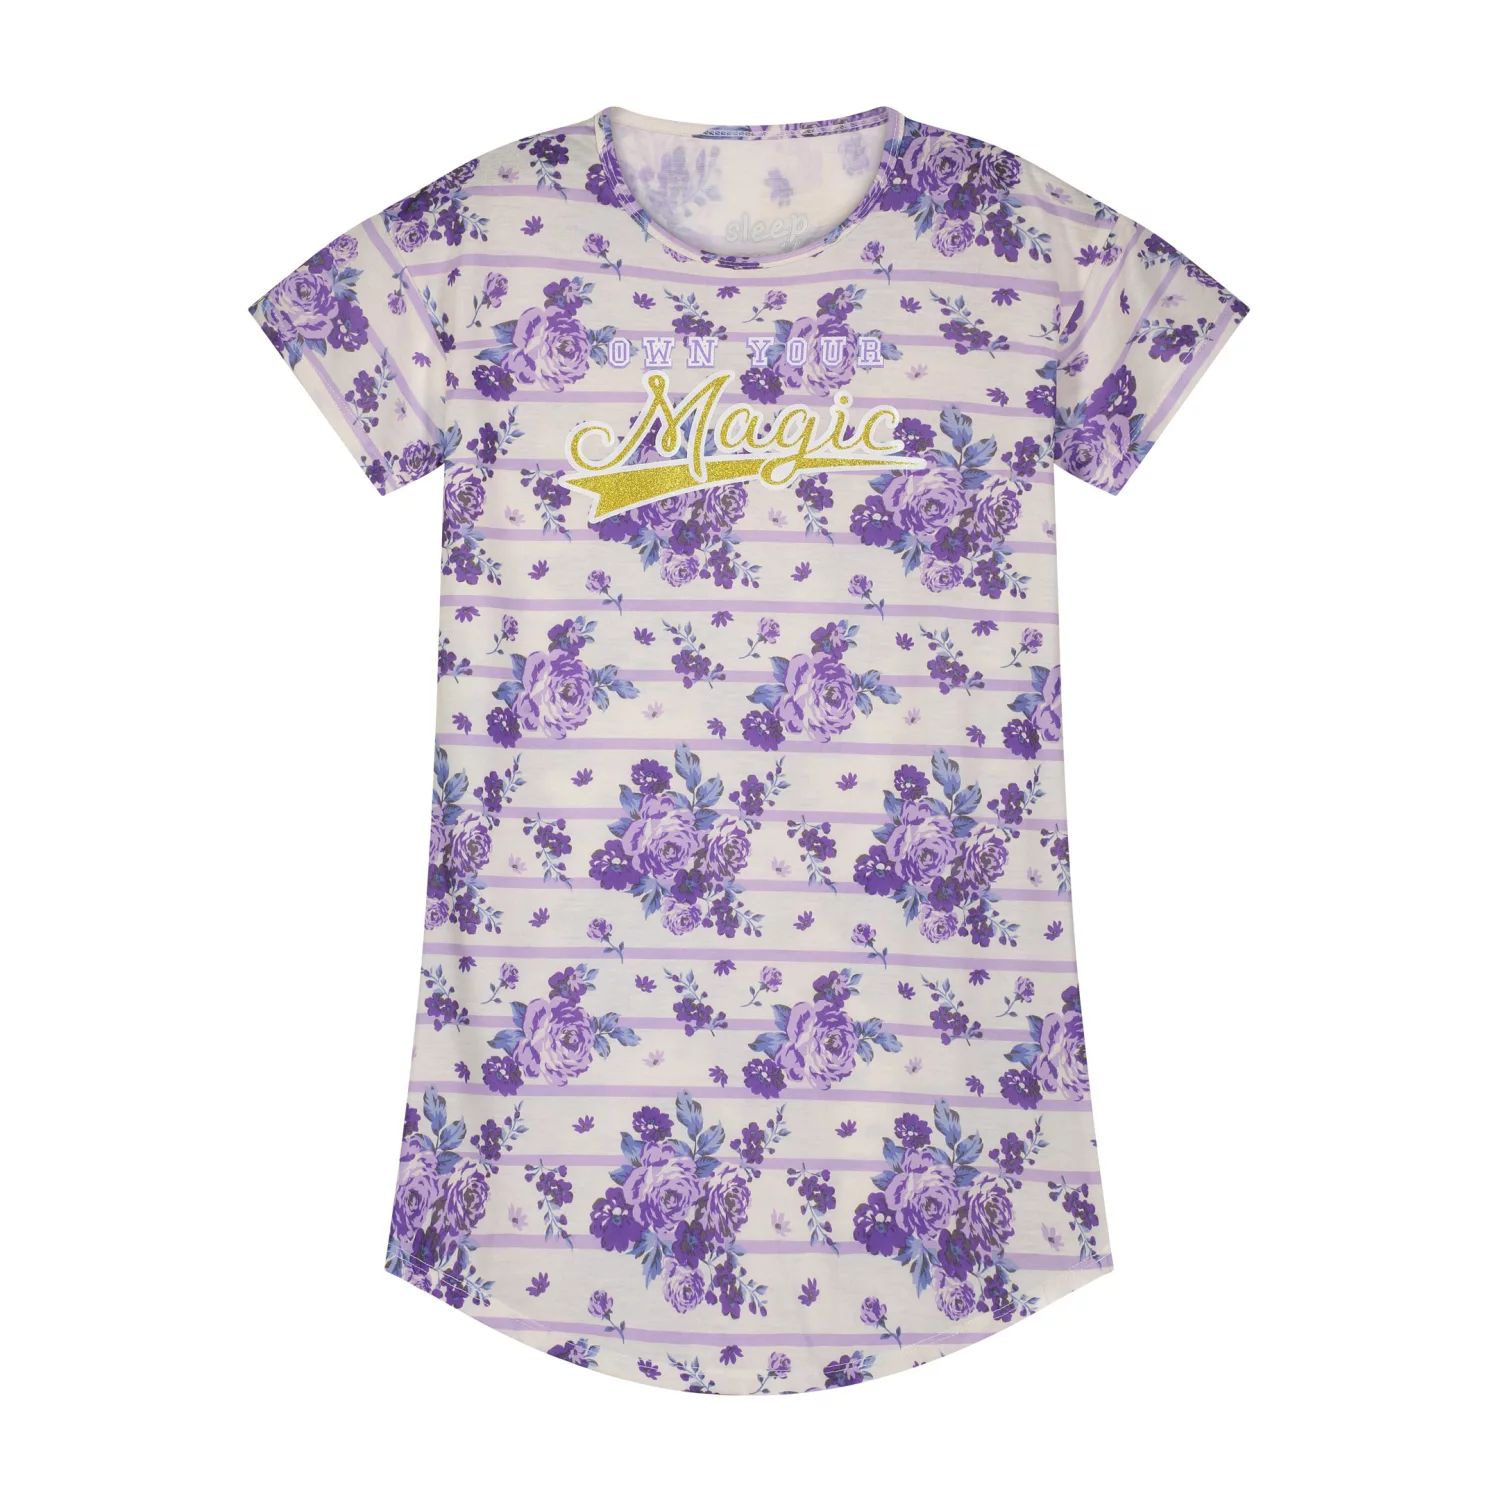 Пижамная рубашка Sleep On It для девочек с волшебным цветочным принтом и соответствующей маской для сна Sleep on it roth henry call it sleep